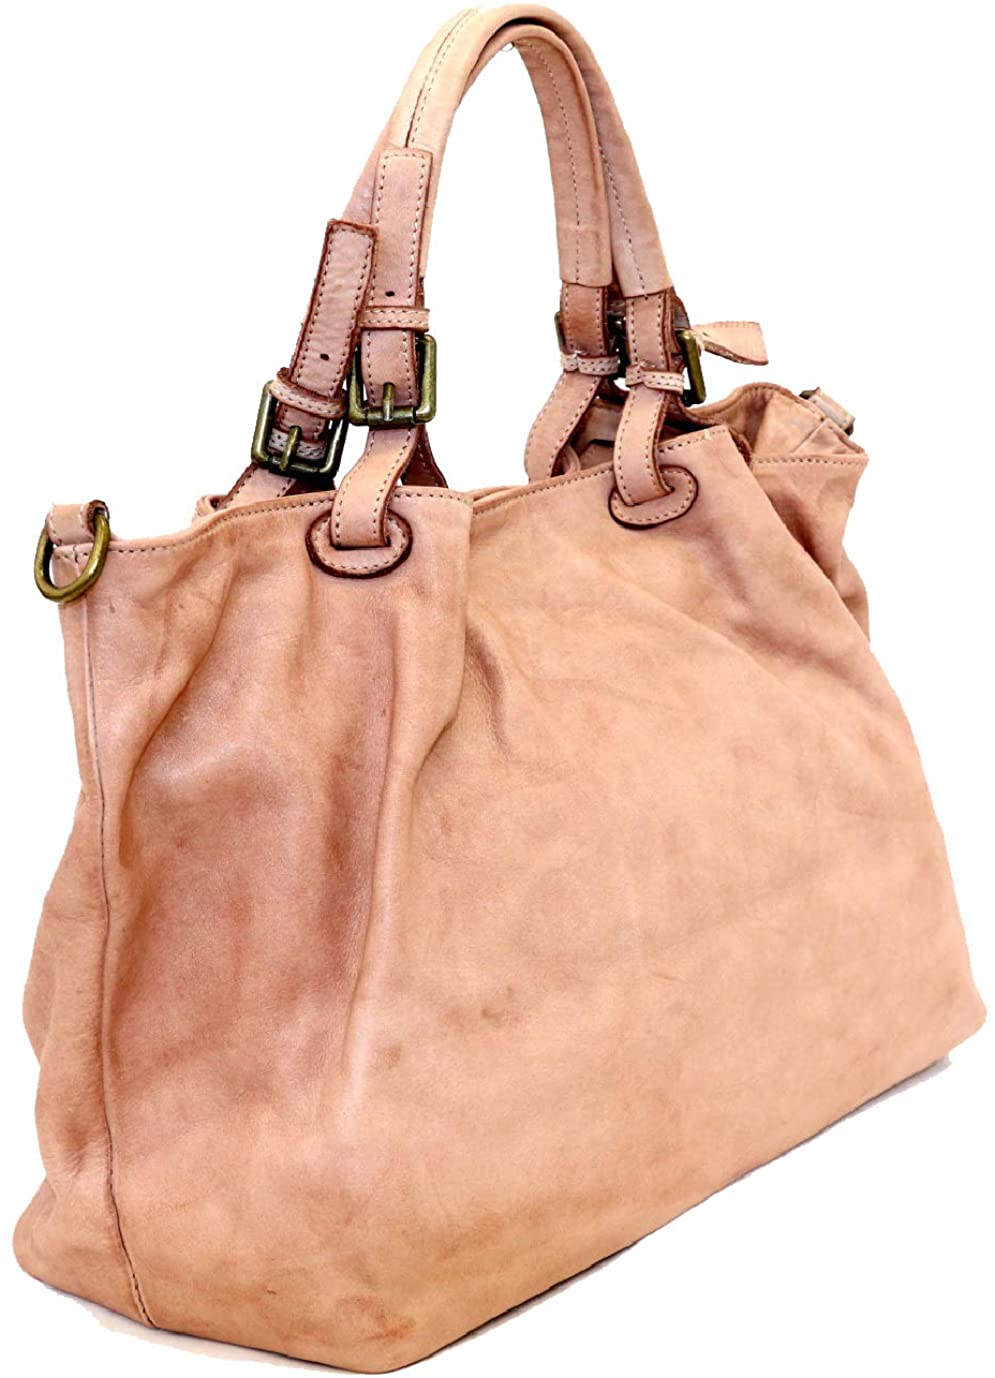 BZNA Bag Fee schwarz Lederfarben Italy Designer Damen Handtasche Schultertasche Tasche Calf Leather Shopper Neu